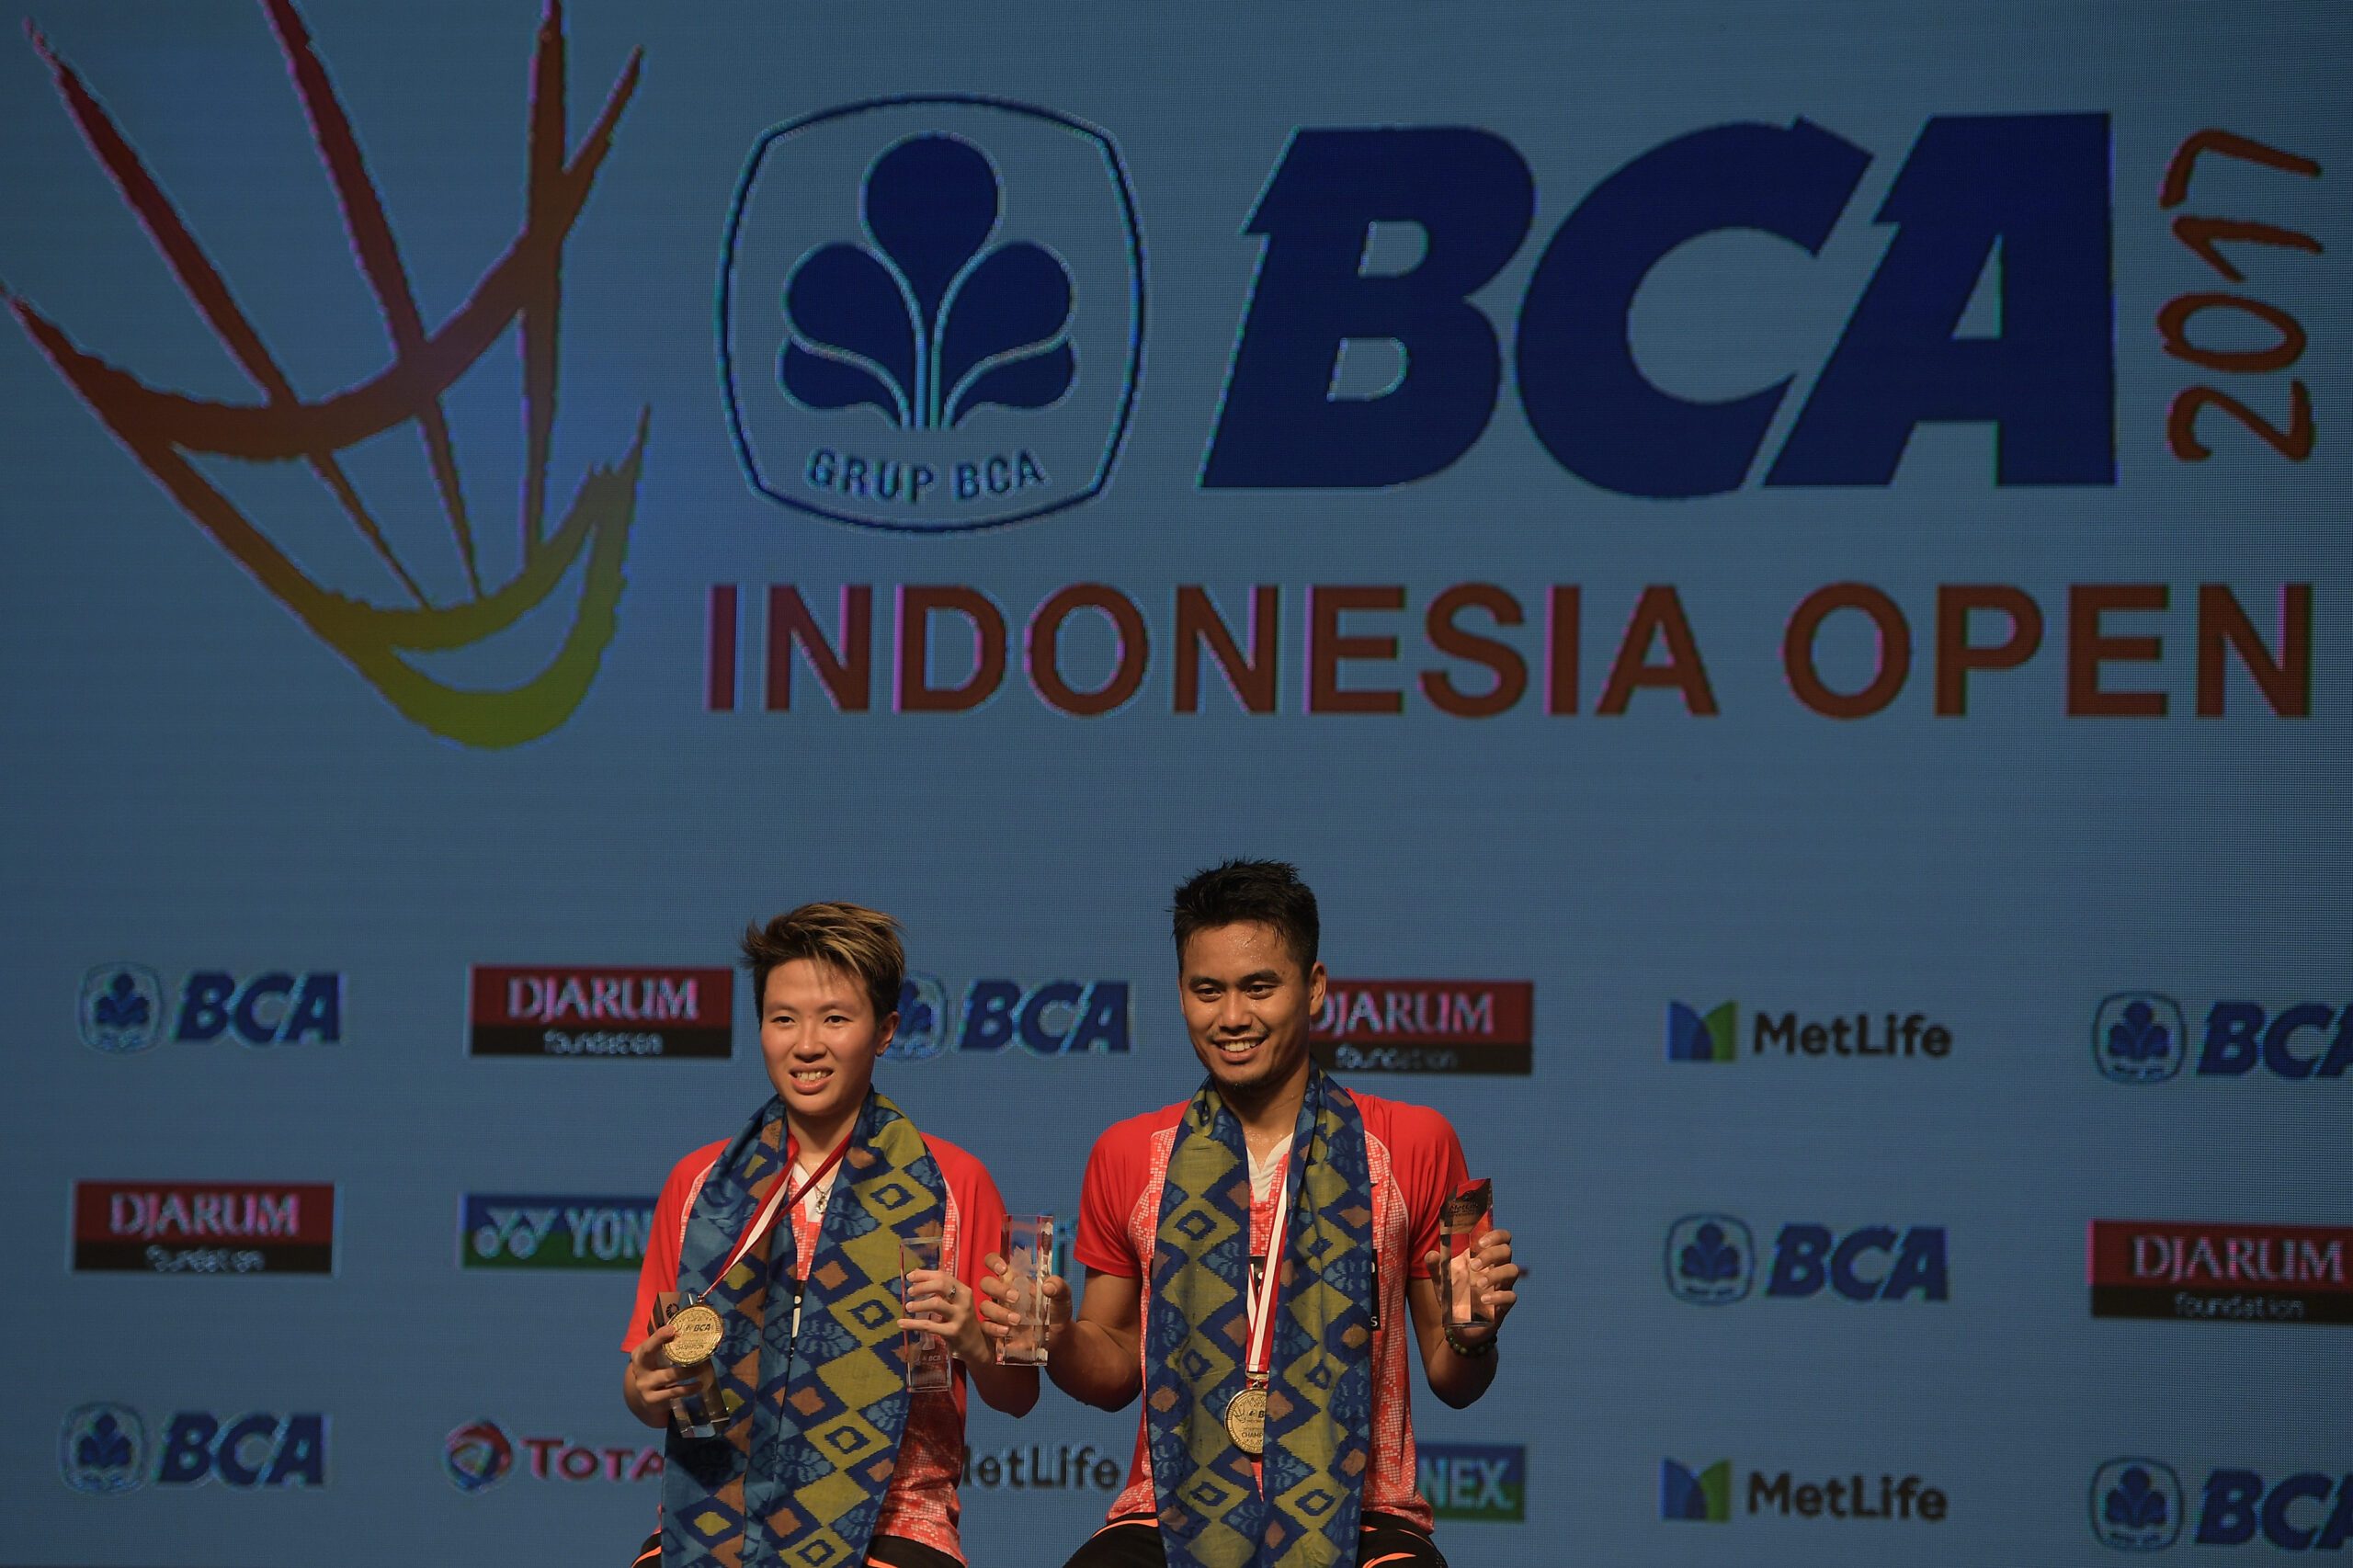 FOTO: Perjuangan Owi/Butet raih juara Indonesia Open 2017